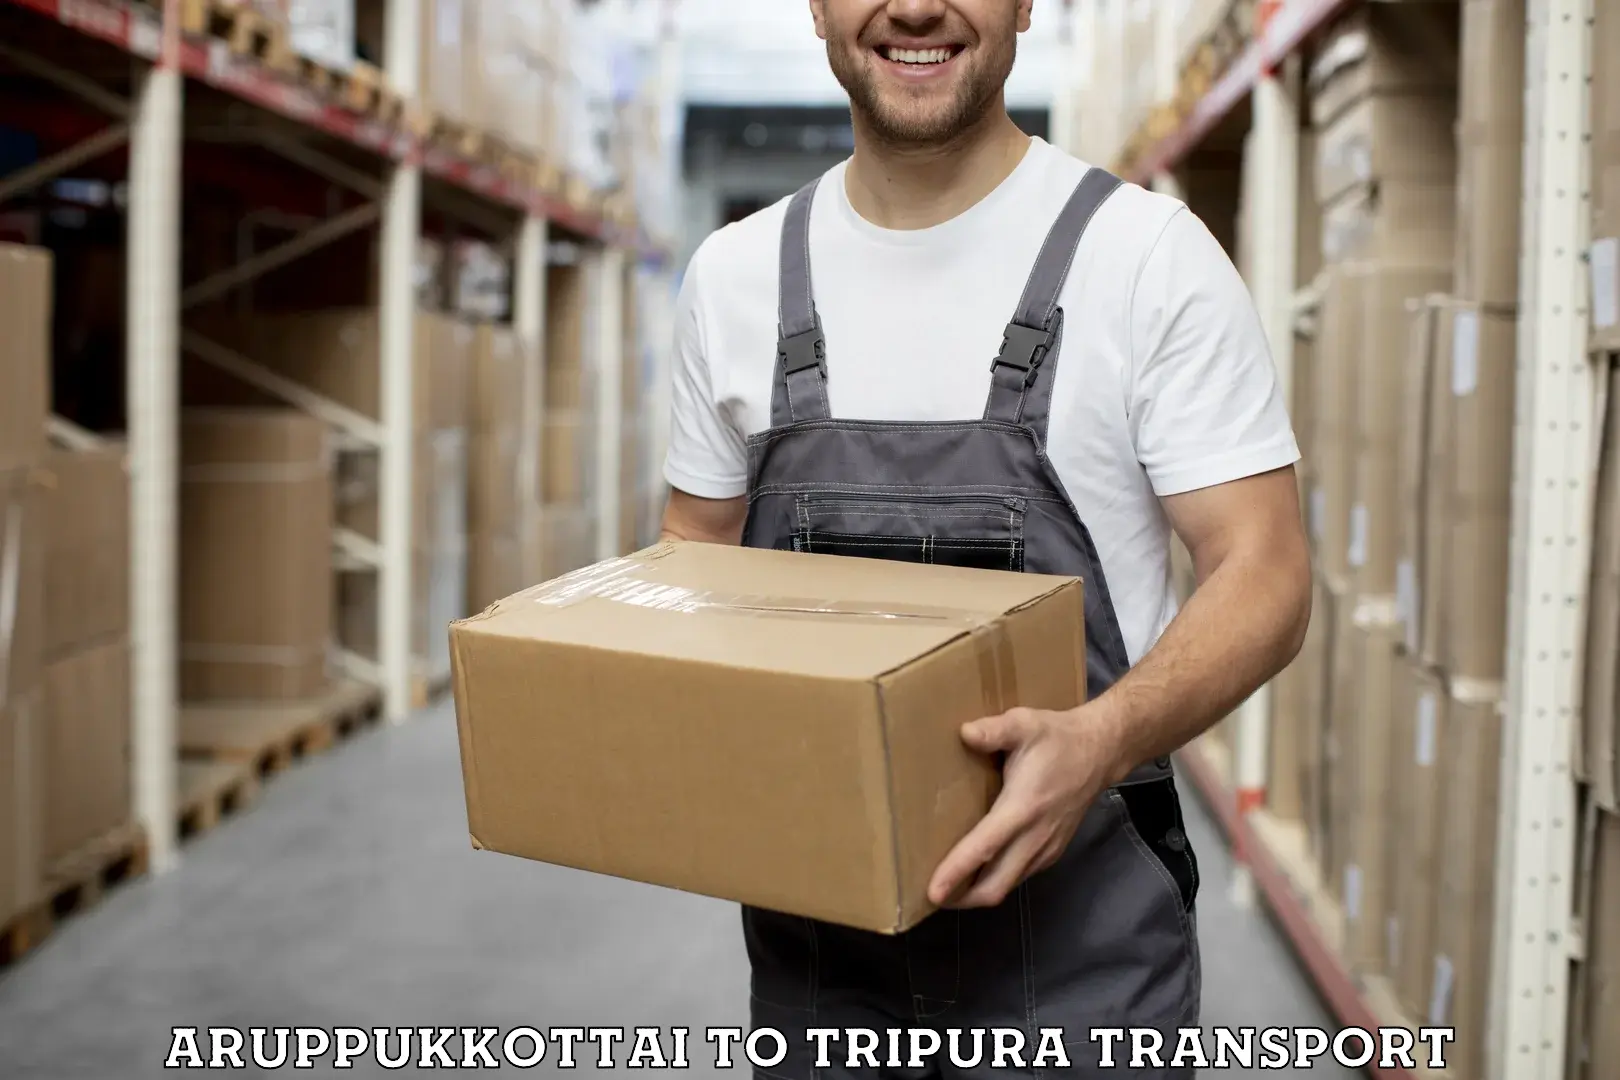 Transport shared services Aruppukkottai to Santirbazar